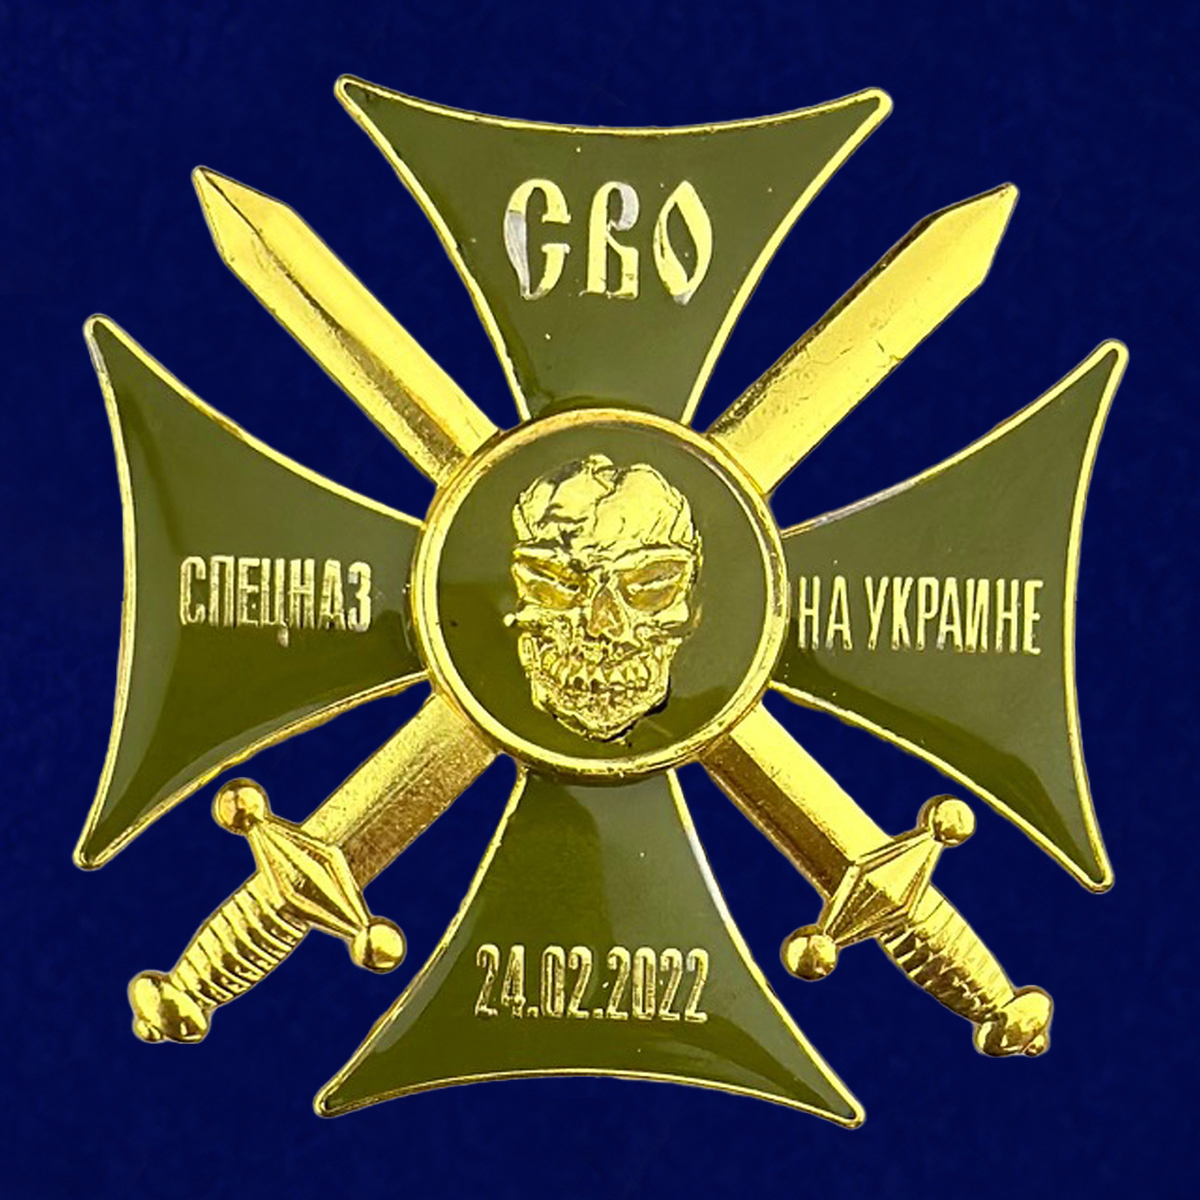   Медали Военной разведки и Спецназа ГРУ